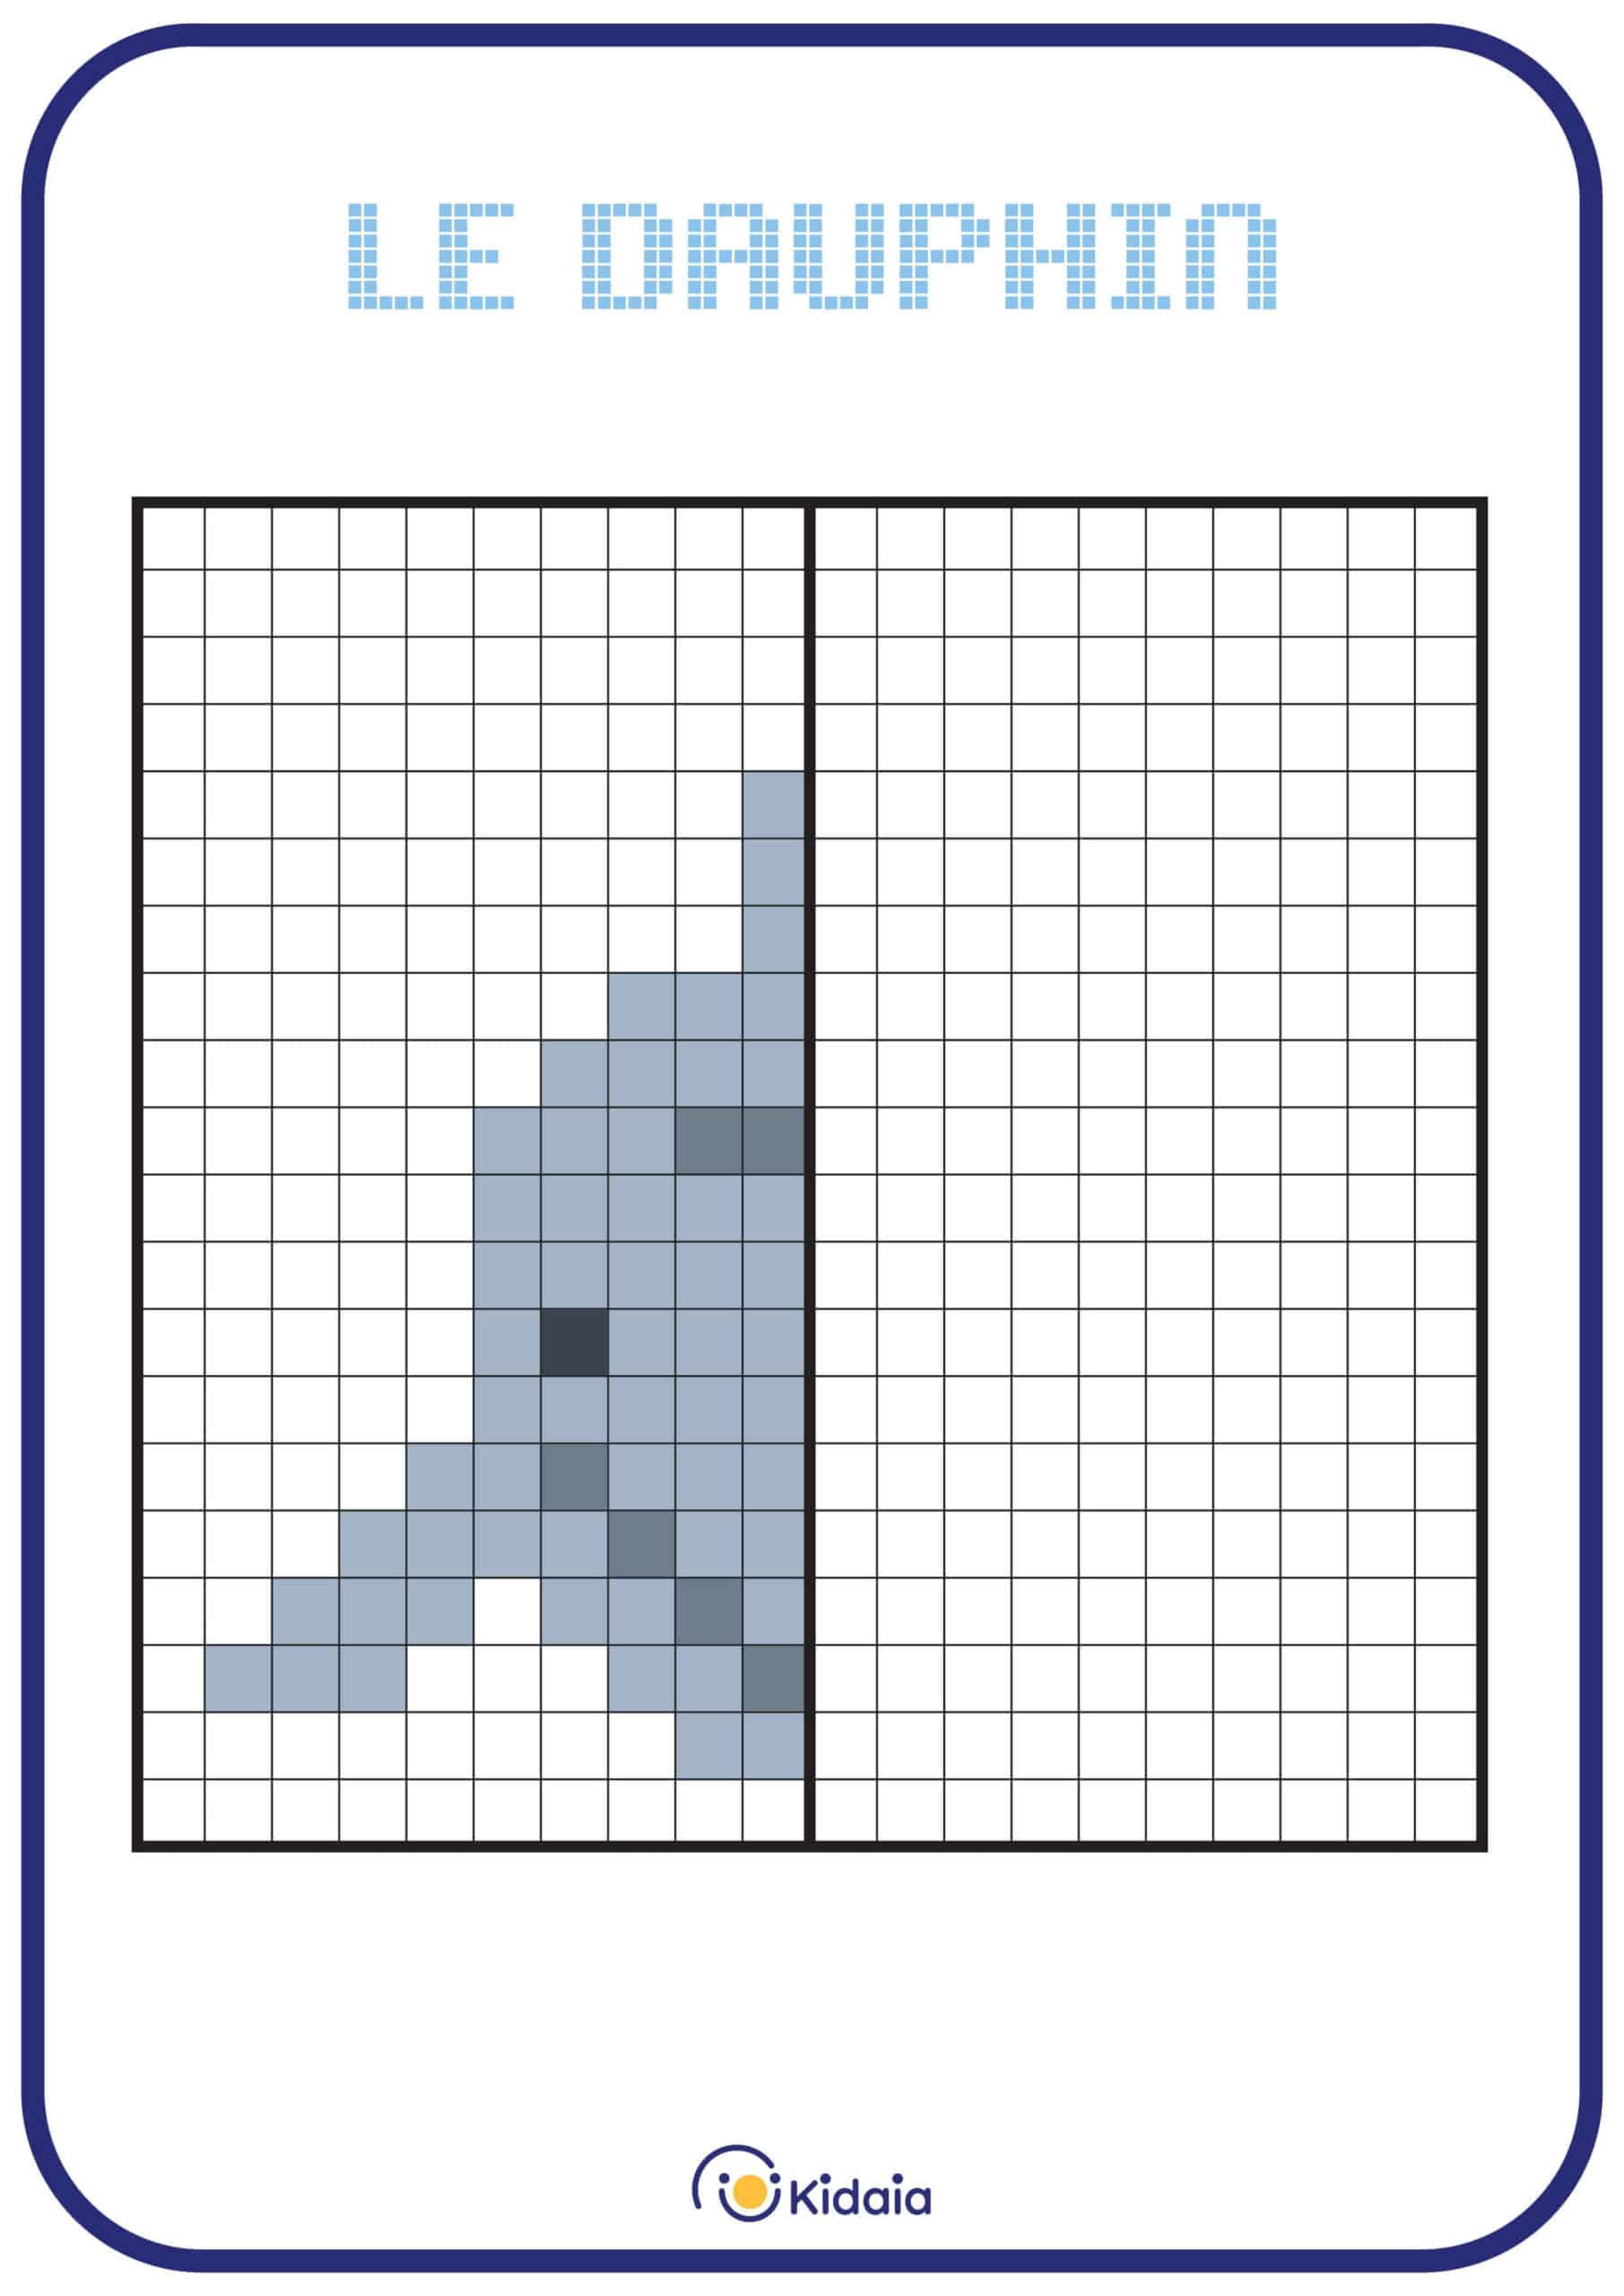 Image de dauphin en pixel art pour que les enfants apprennent la symétrie.